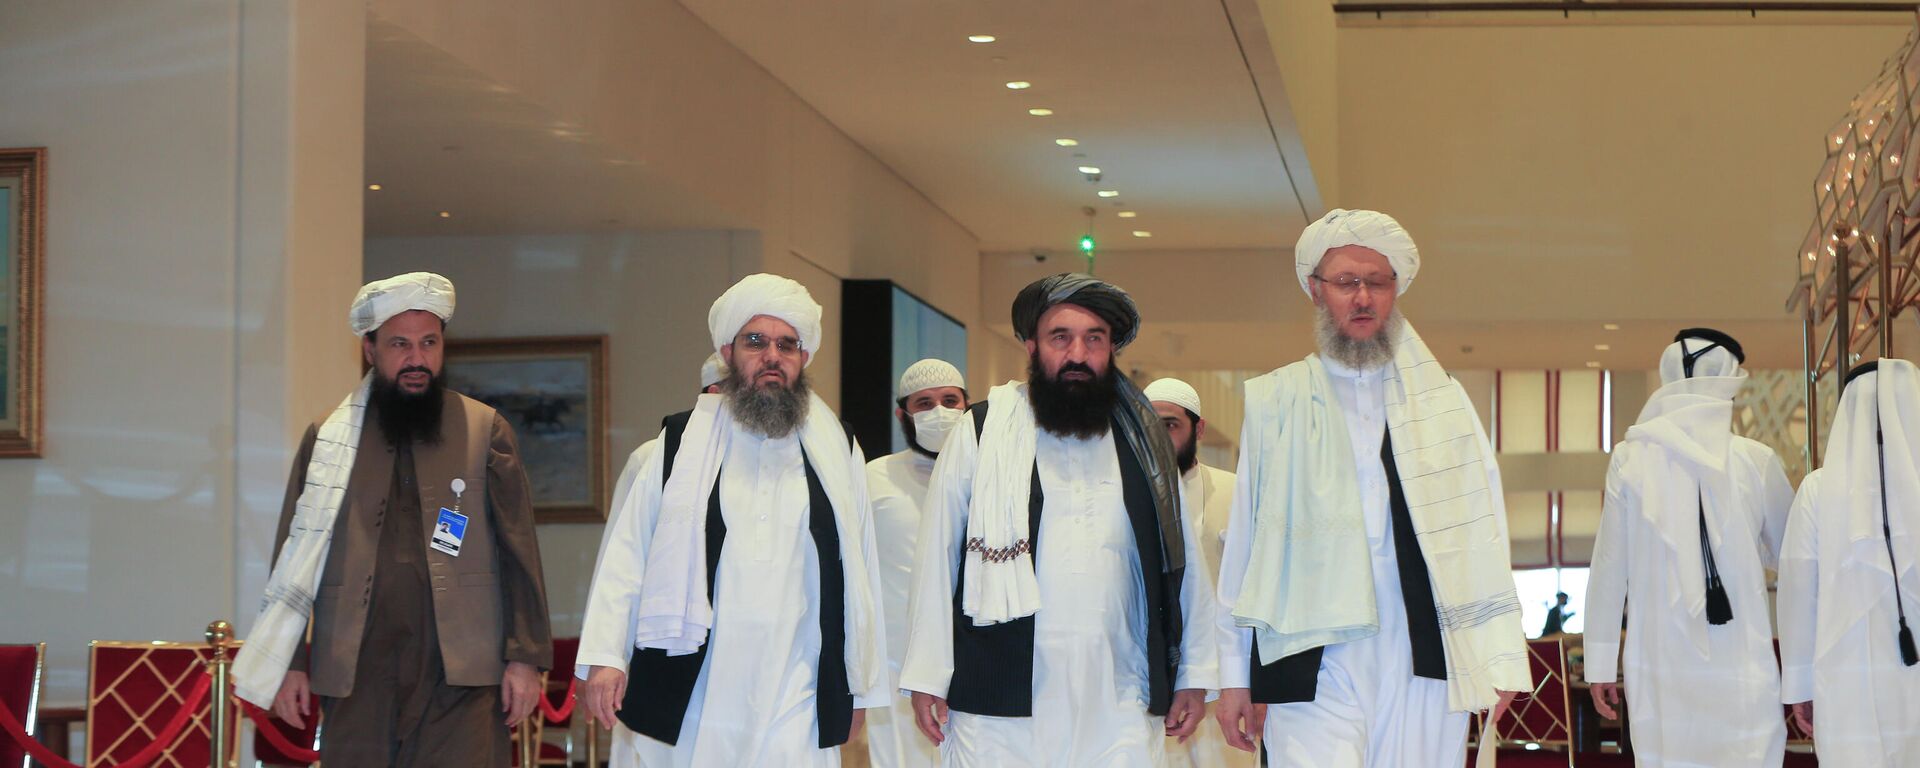 Una delegación de los talibanes - Sputnik Mundo, 1920, 02.12.2021